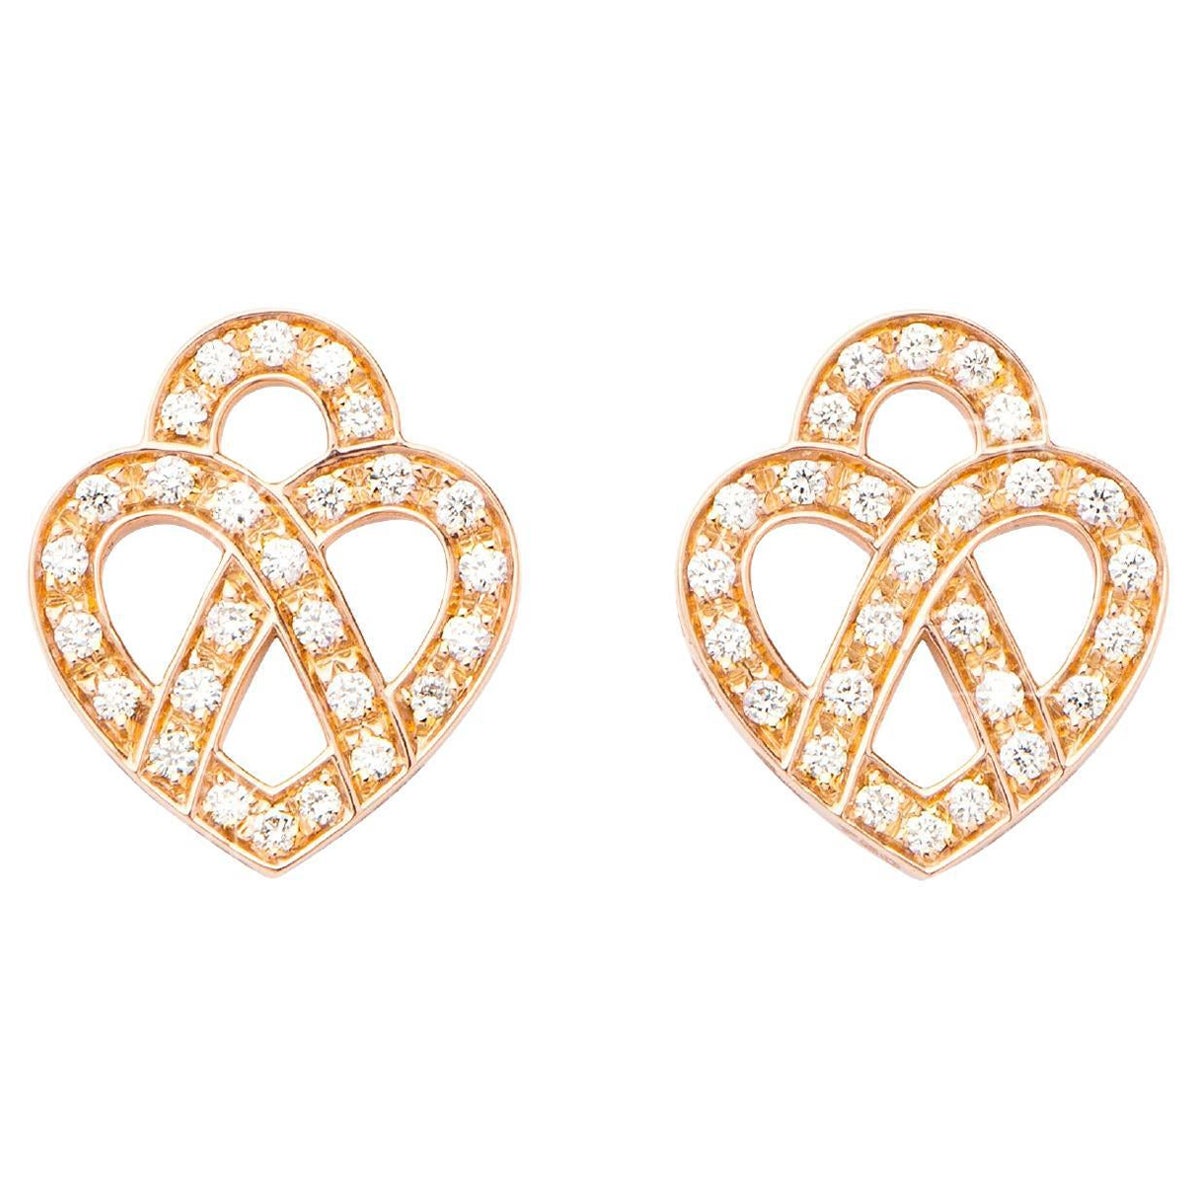 Boucles d'oreilles en or 18 carats et diamants, or rose, collection Cœur Entrelacé